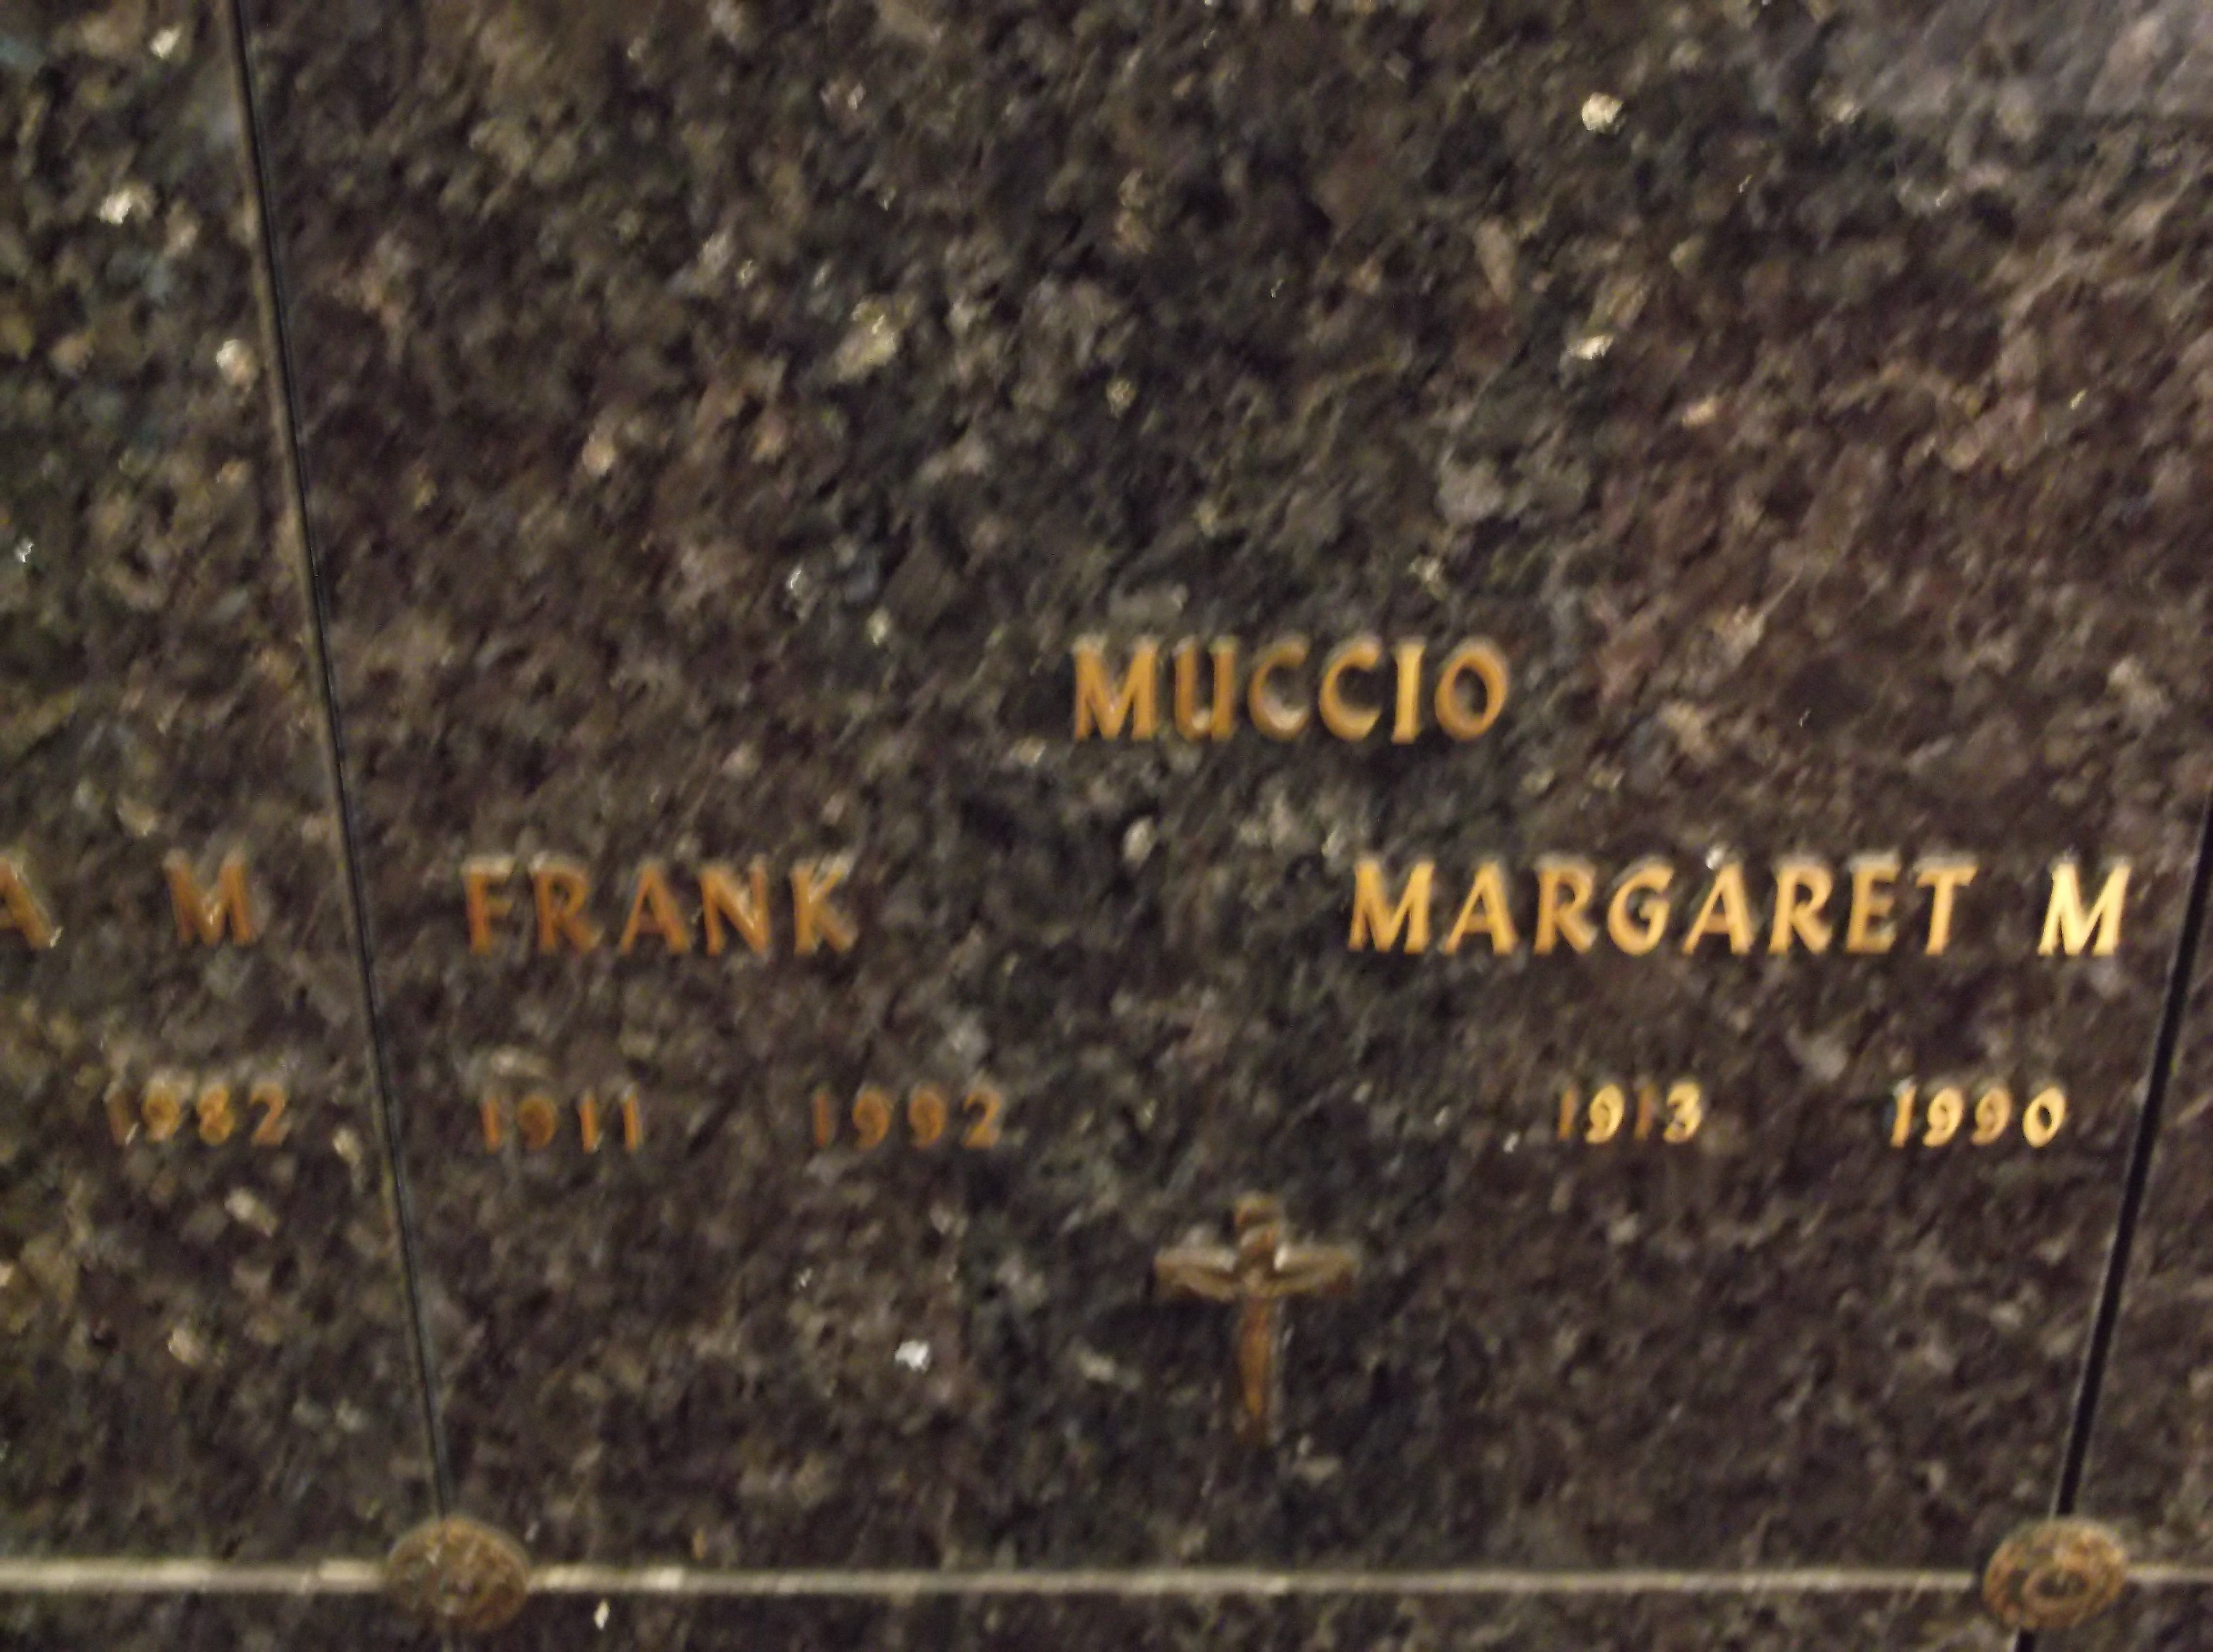 Margaret M Muccio